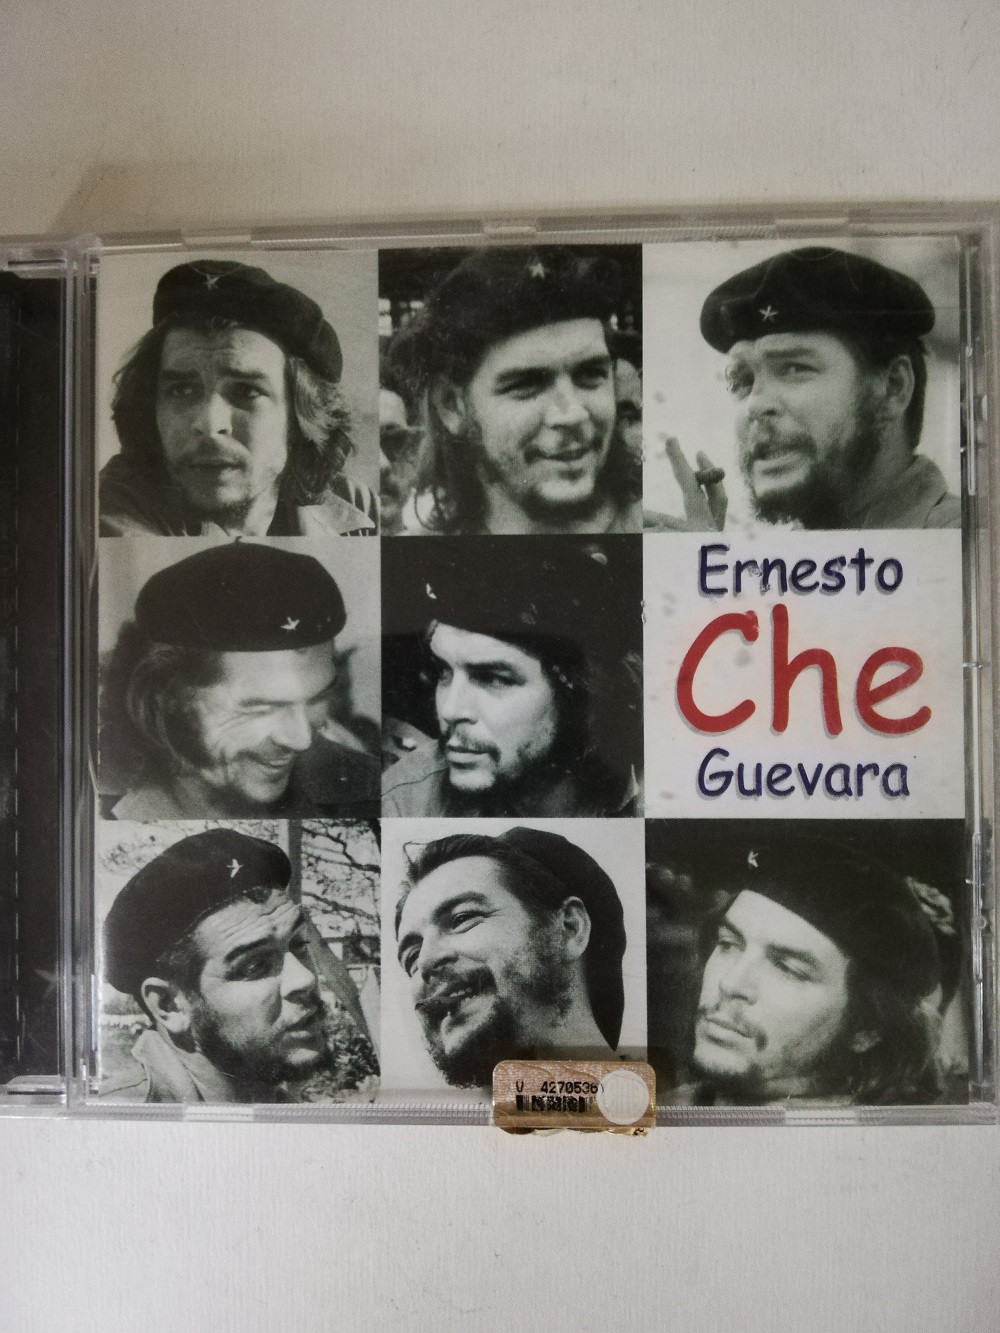 Imagen CD ERNESTO CHE GUEVARA - ARTISTAS VARIOS 1